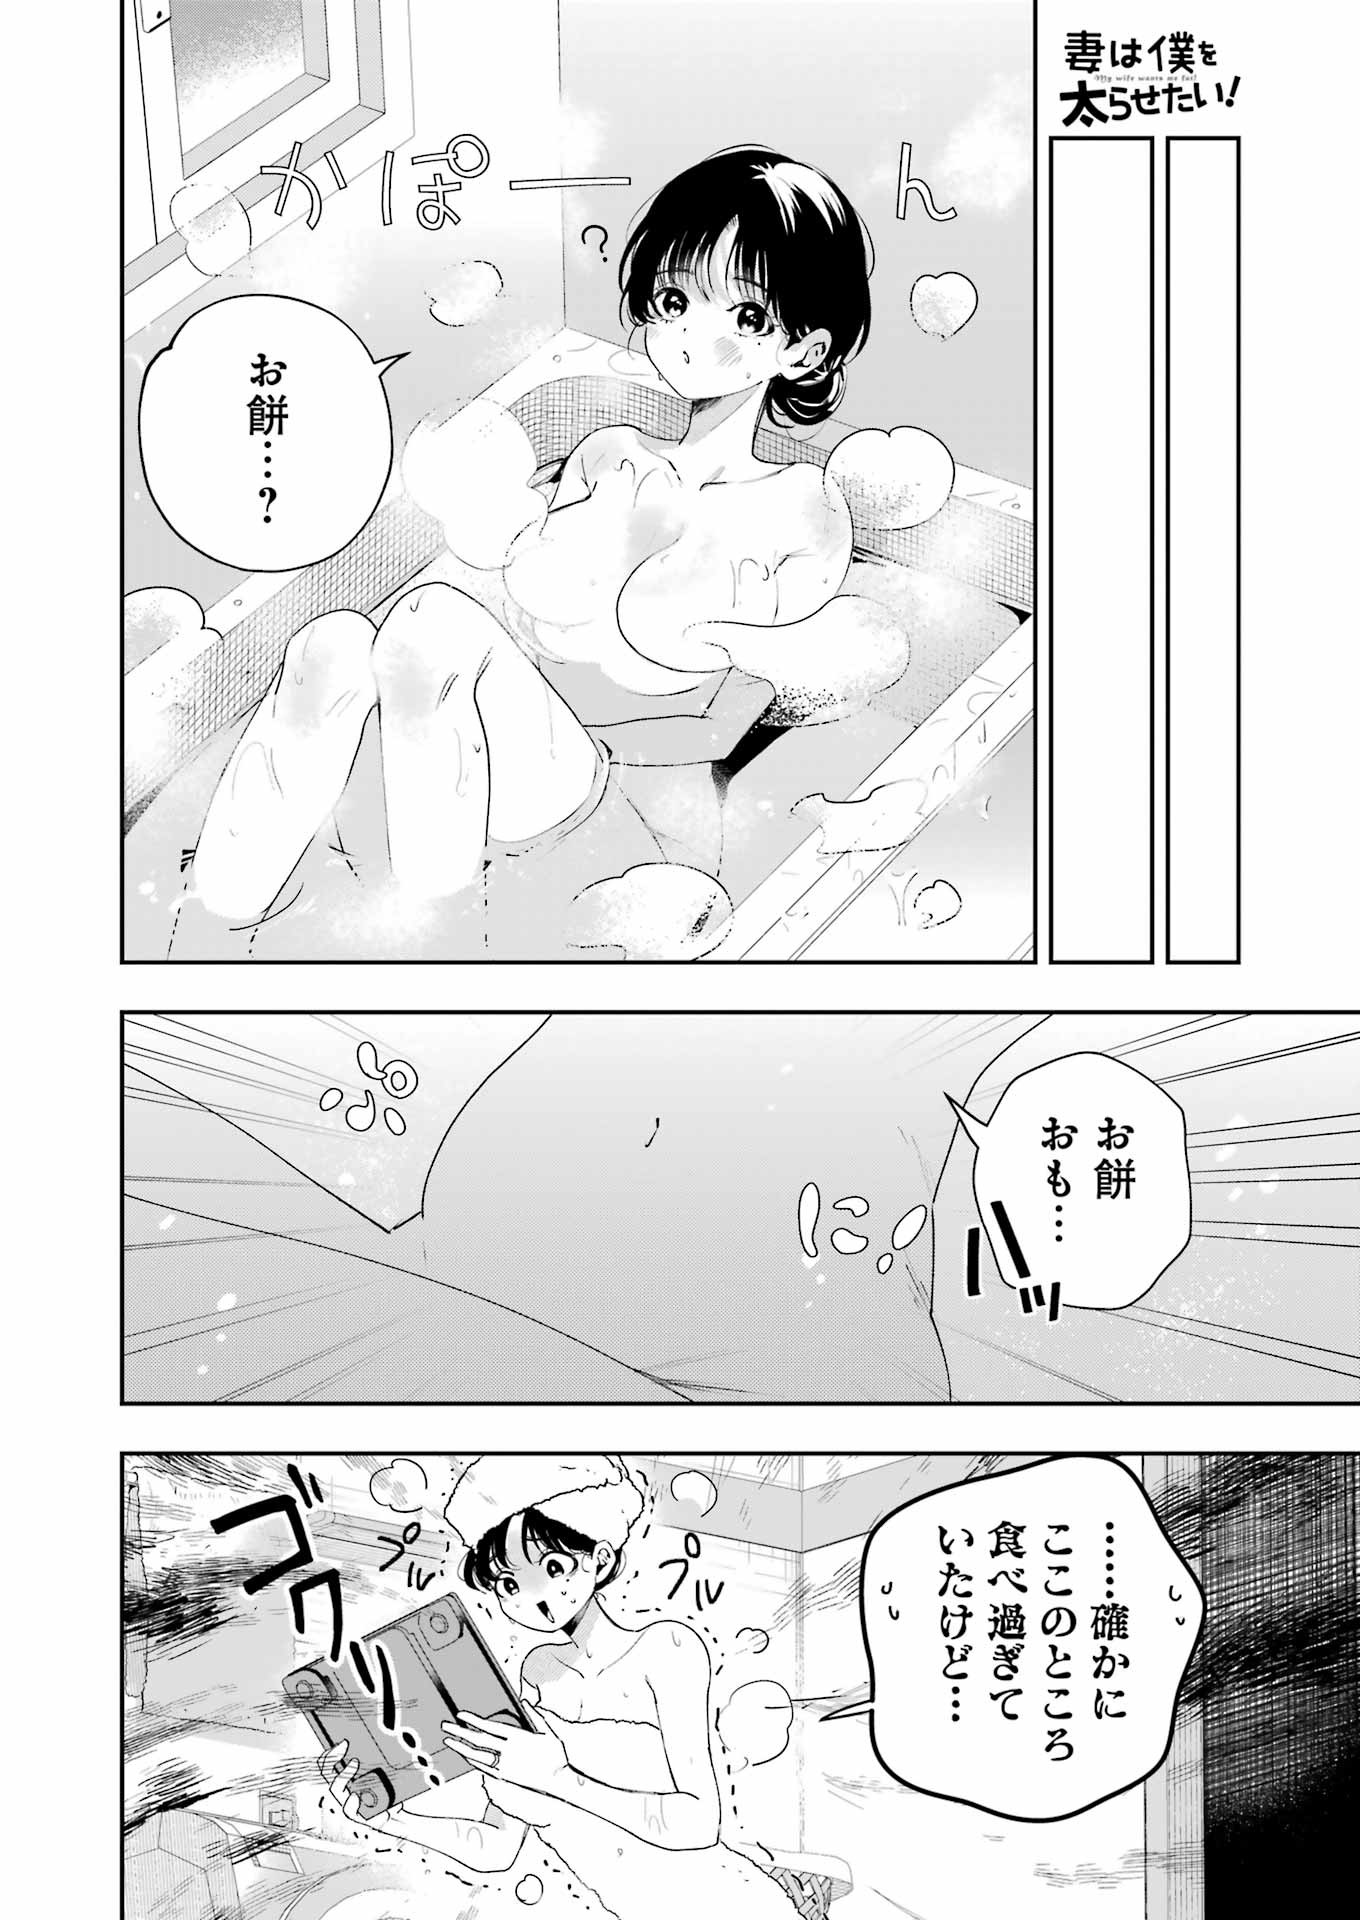 Tsuma wa Boku wo Futorasetai! - Chapter 14 - Page 22